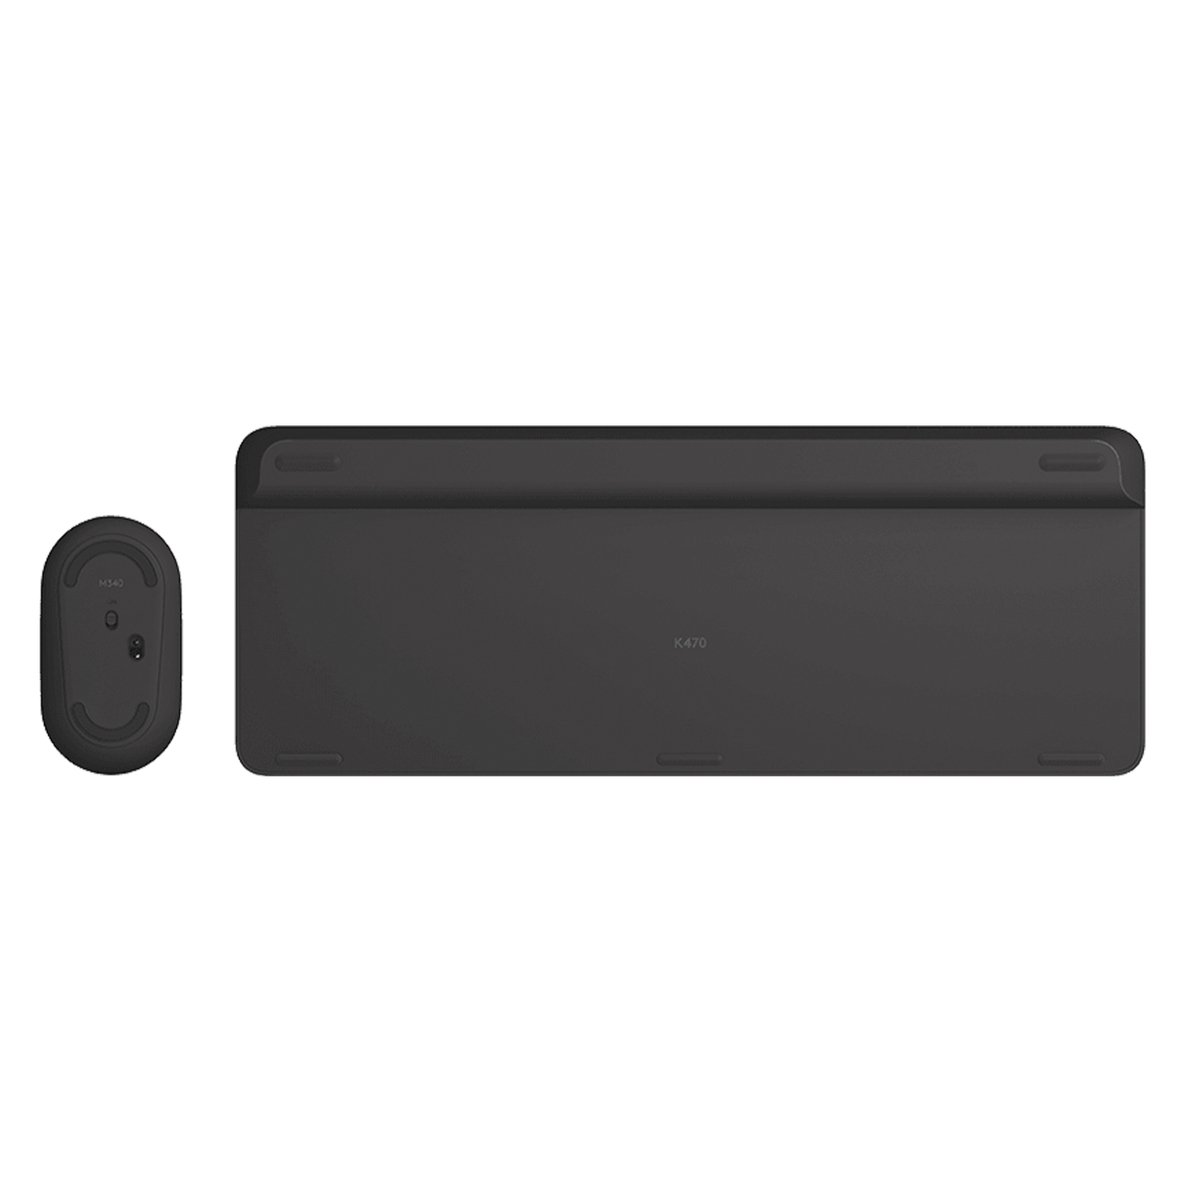 Logitech MK470 Slim Wireless Keyboard & Mouse Combo Black